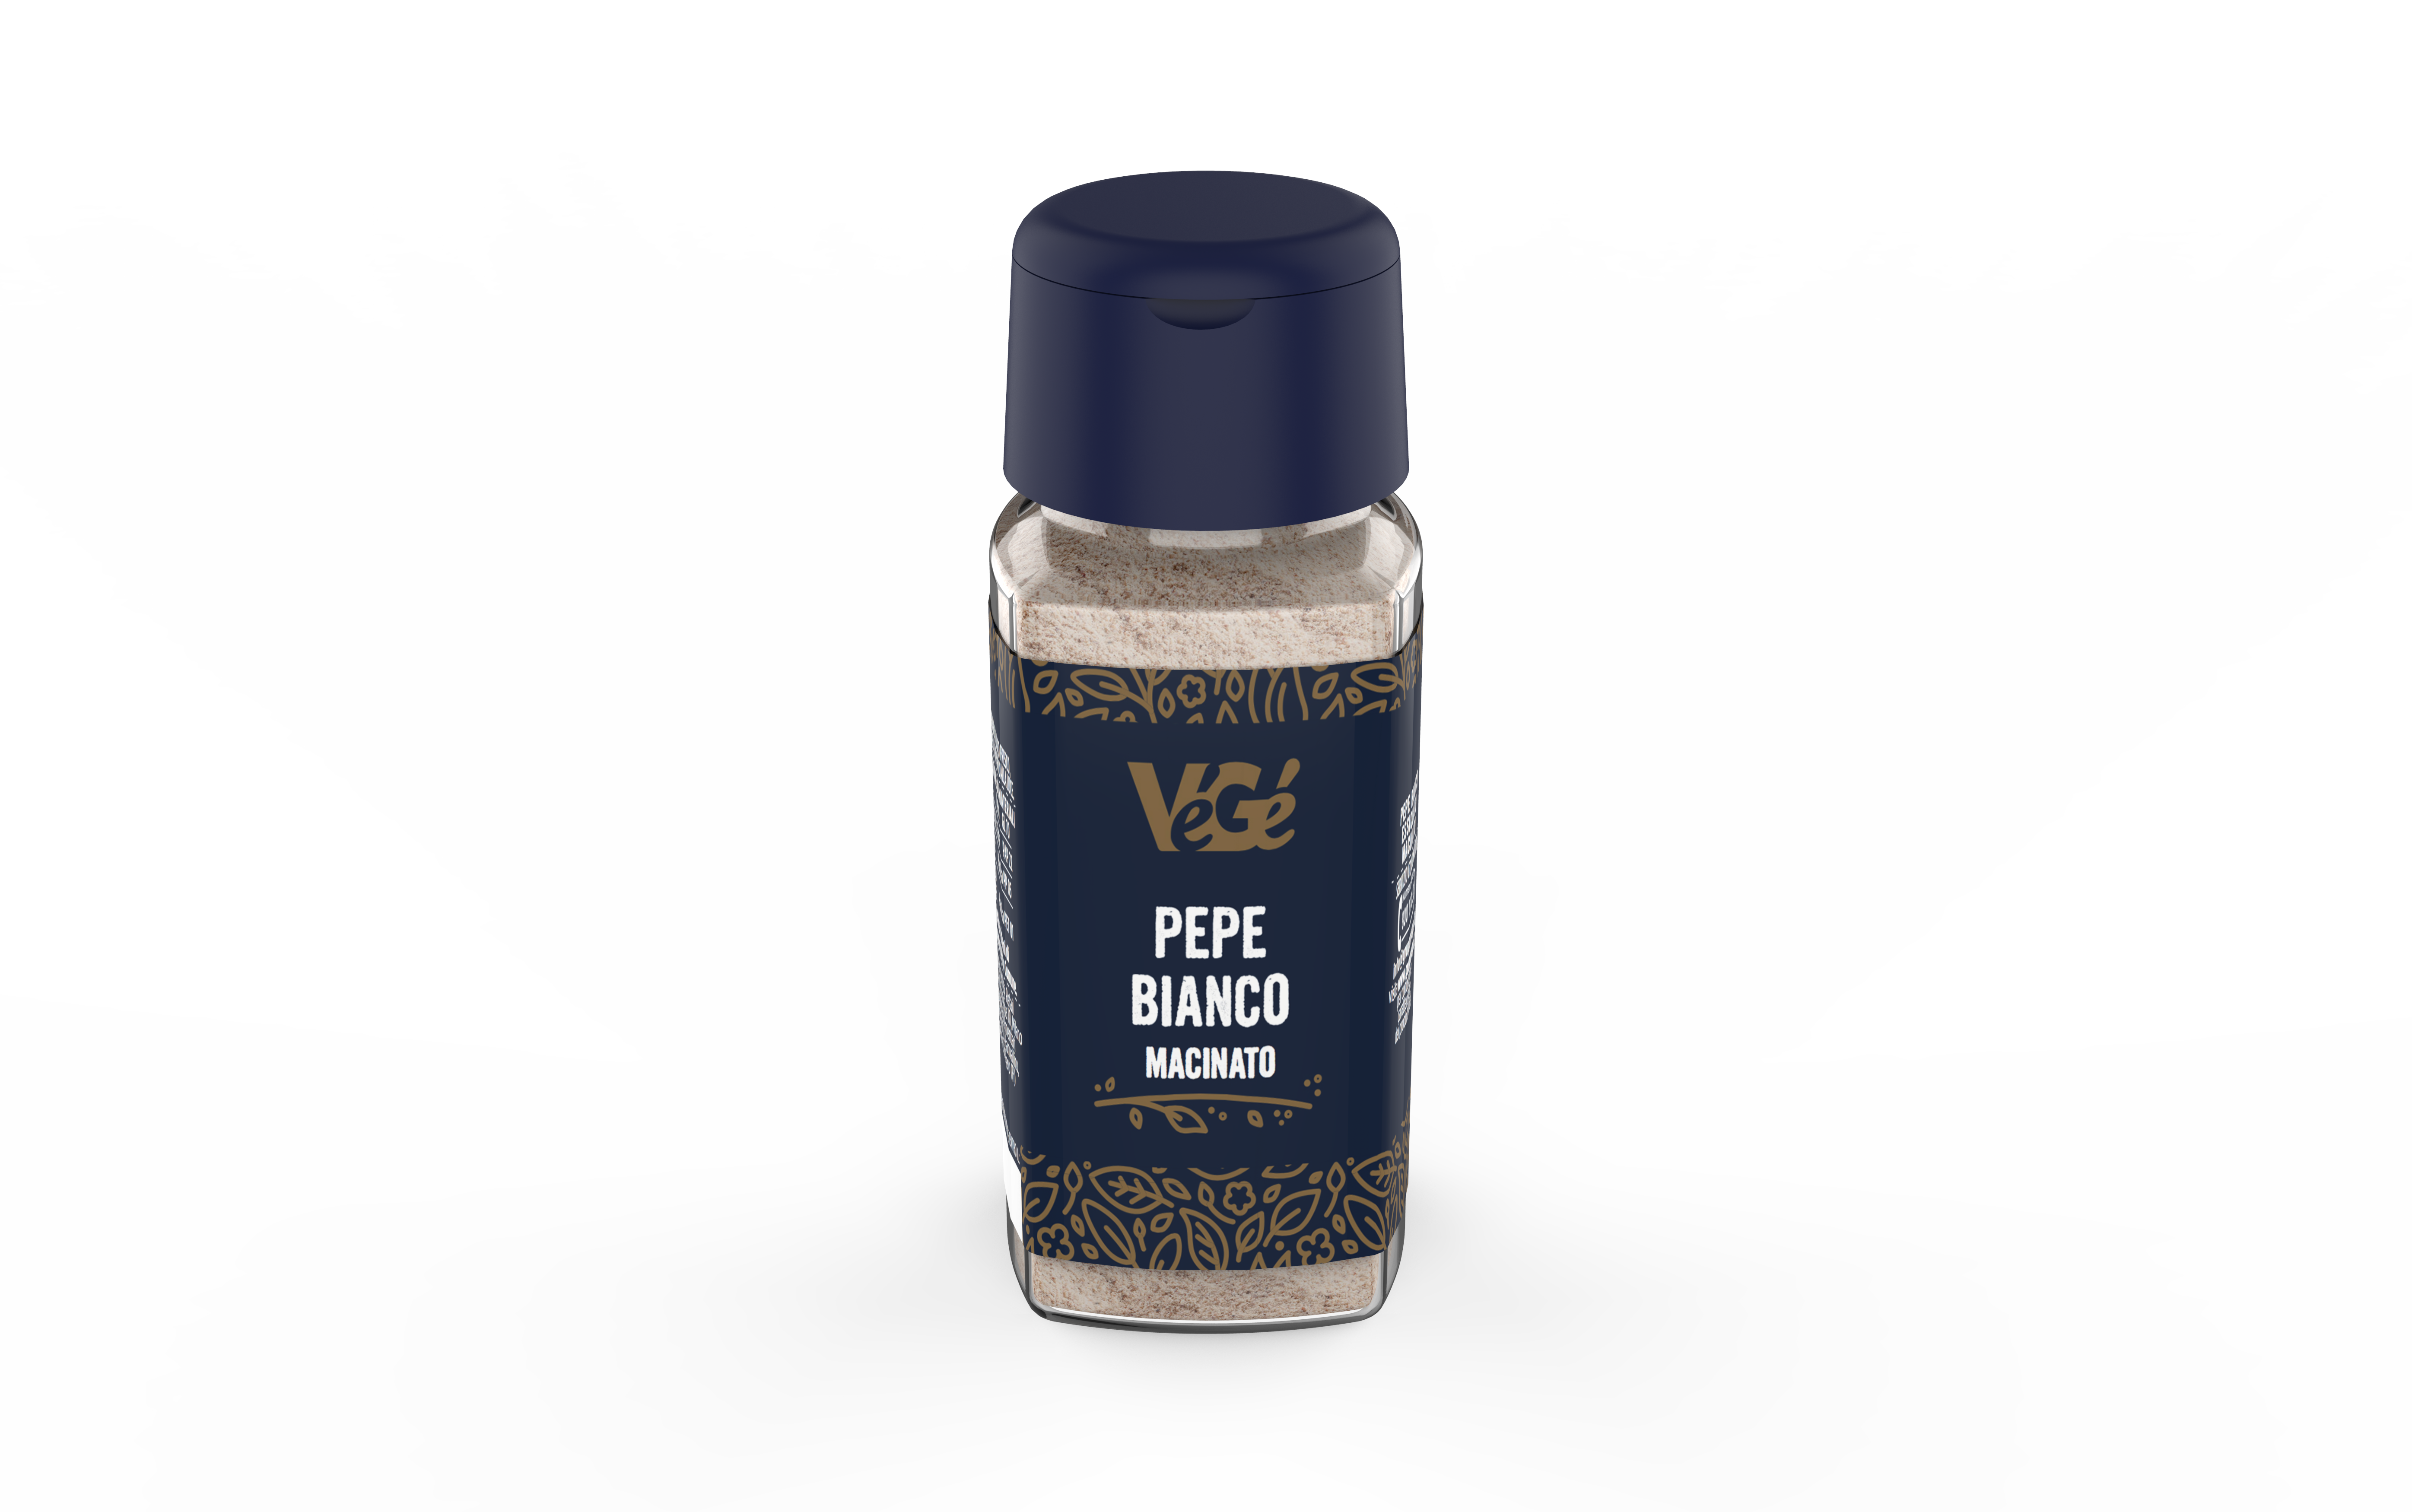 Pepe bianco macinato Vegé GDO (Grande Distribuzione Organizzata)